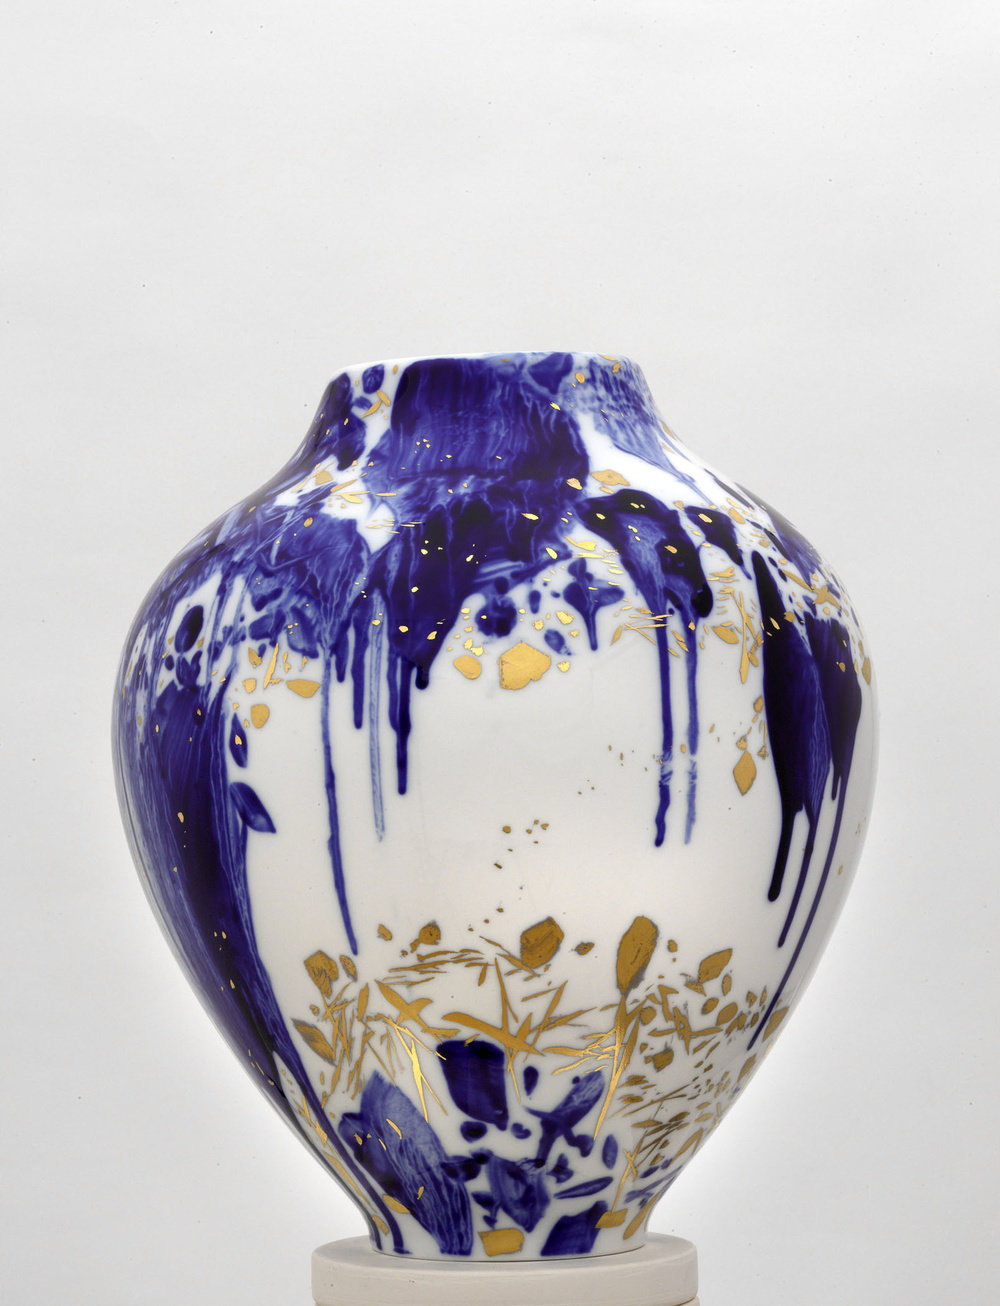 Chu teh chun, de neige, d’or, et d’azur, vase 3, (view 1), 2007 2008, porcelain, h 14 58, d 11 34  in